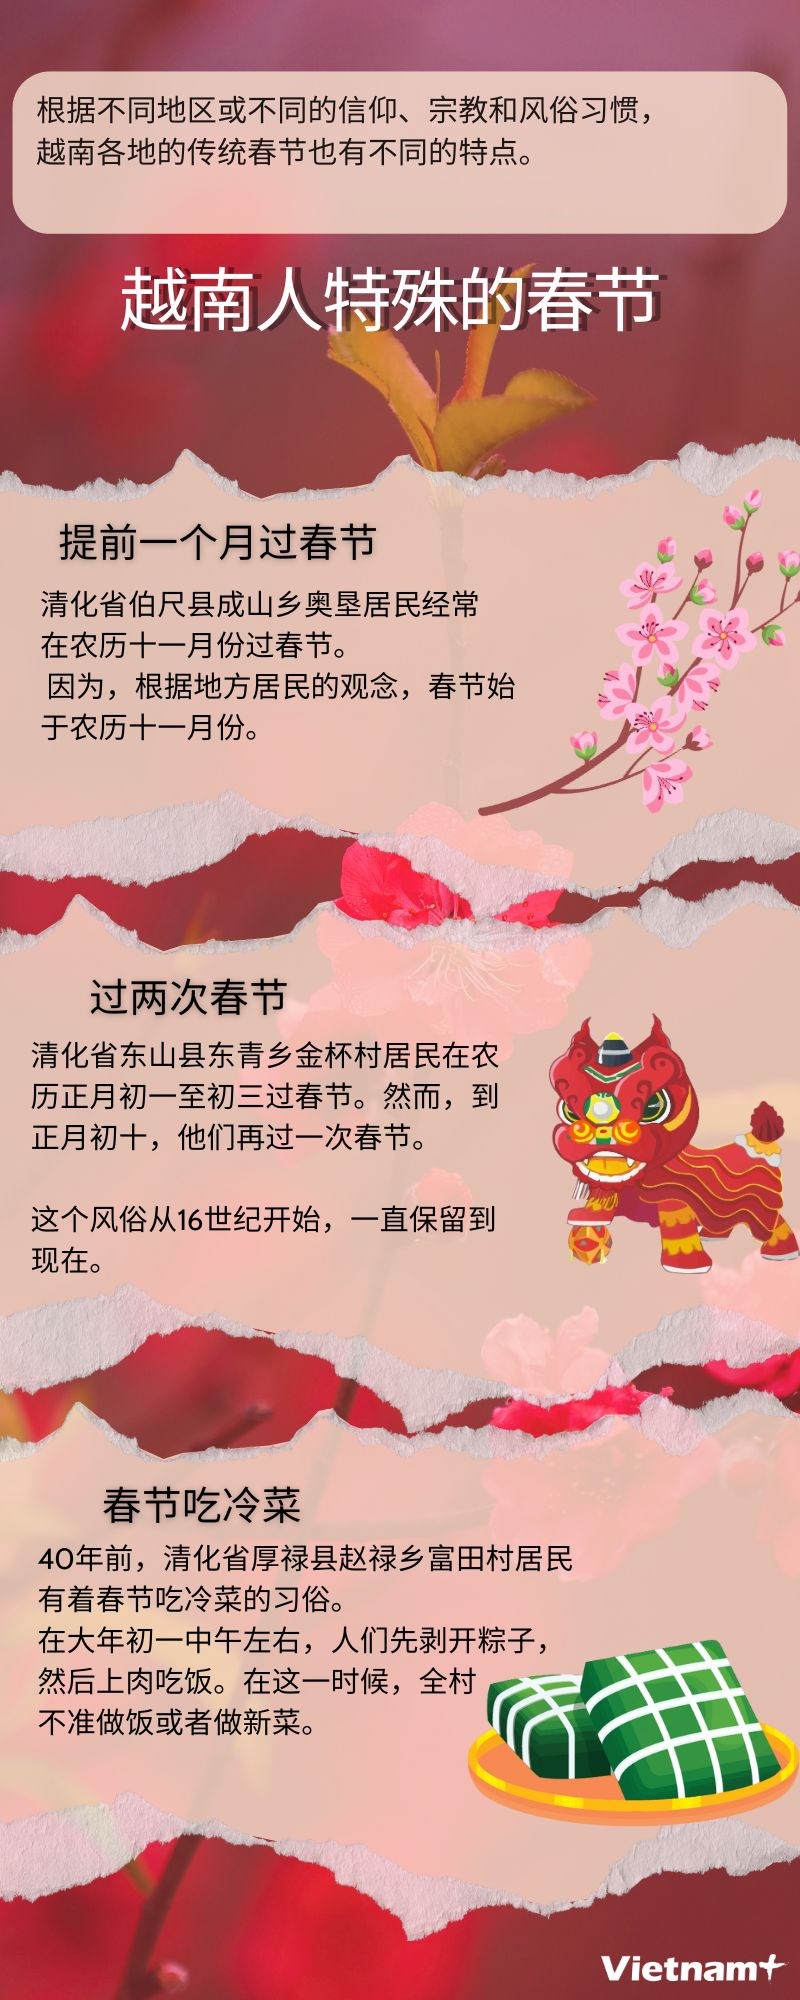 图表新闻：越南人特殊的传统节日——春节 hinh anh 1